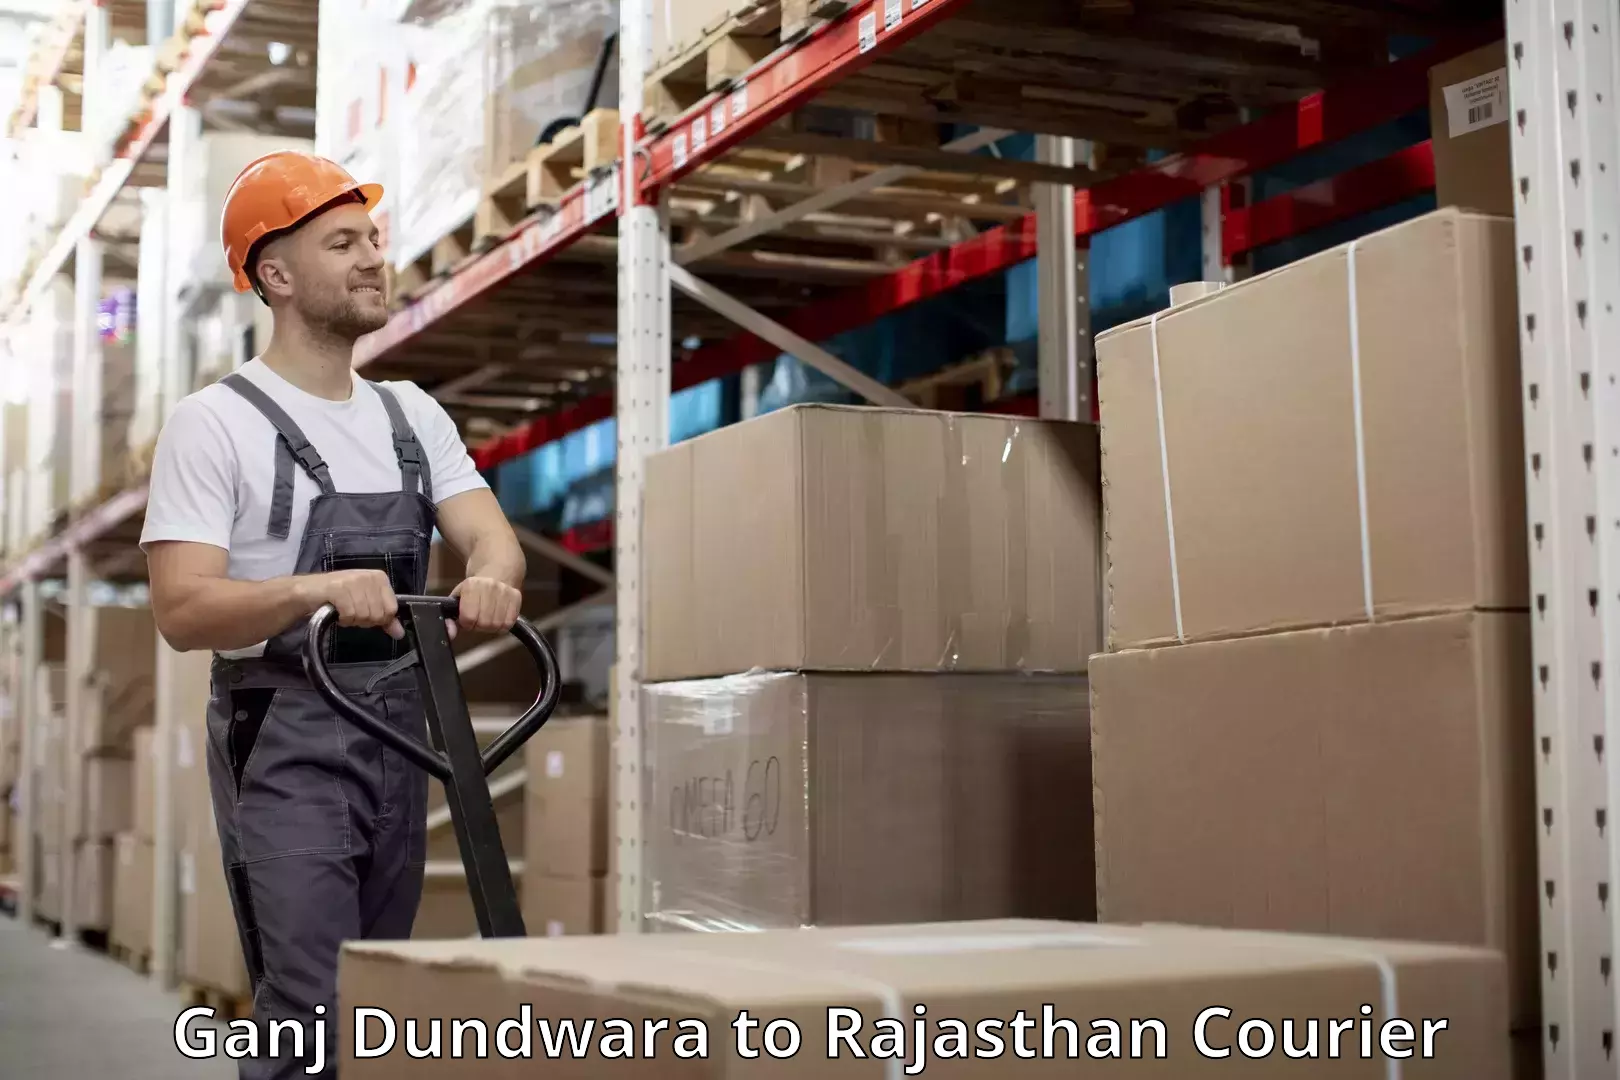 Baggage shipping advice Ganj Dundwara to Dhorimana